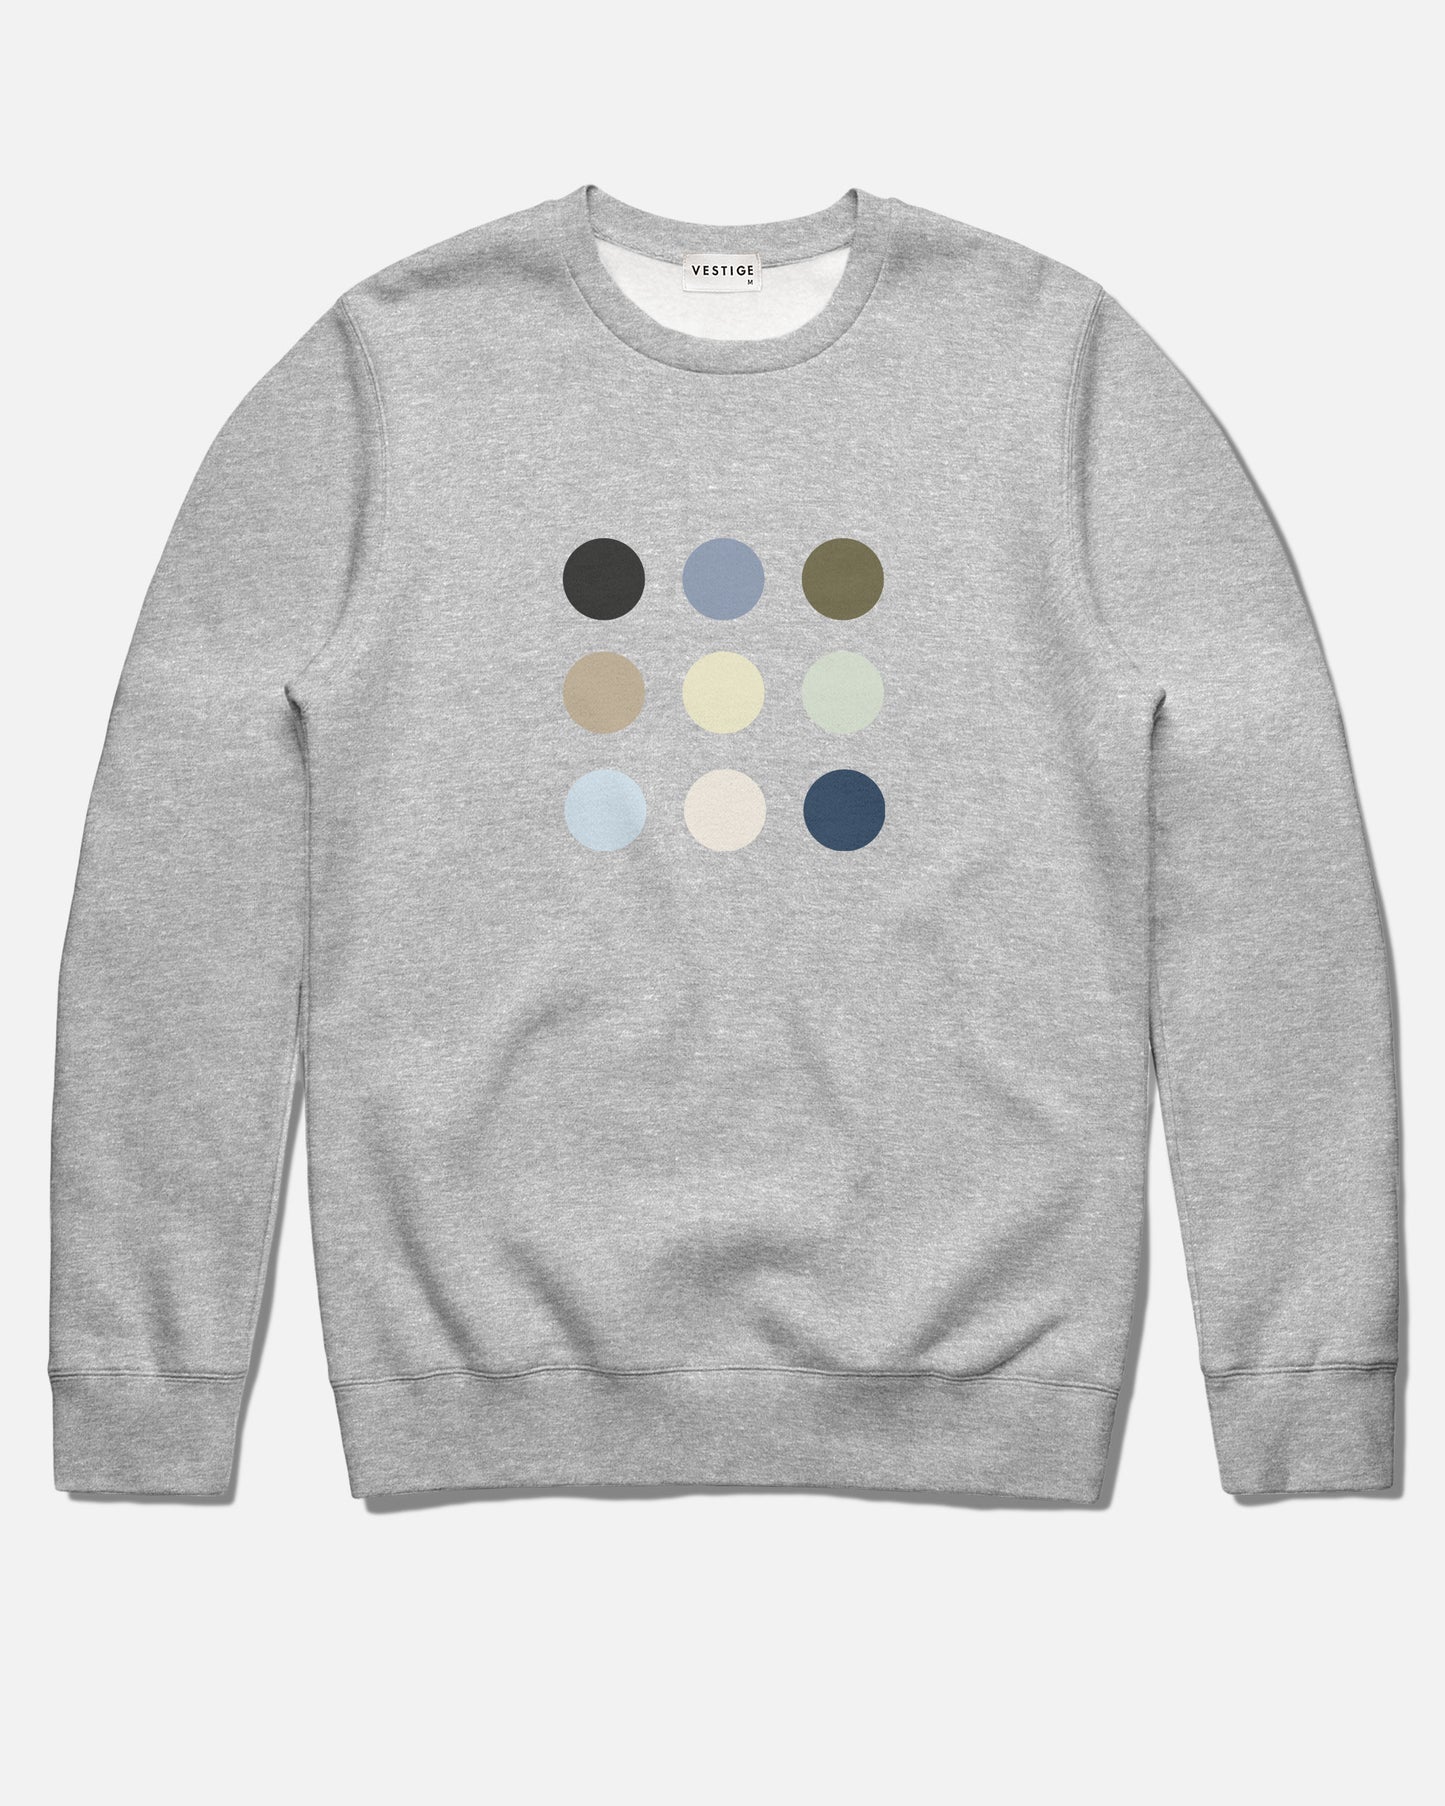 Dot Grid Fleece Sweatshirt, Heather Grey